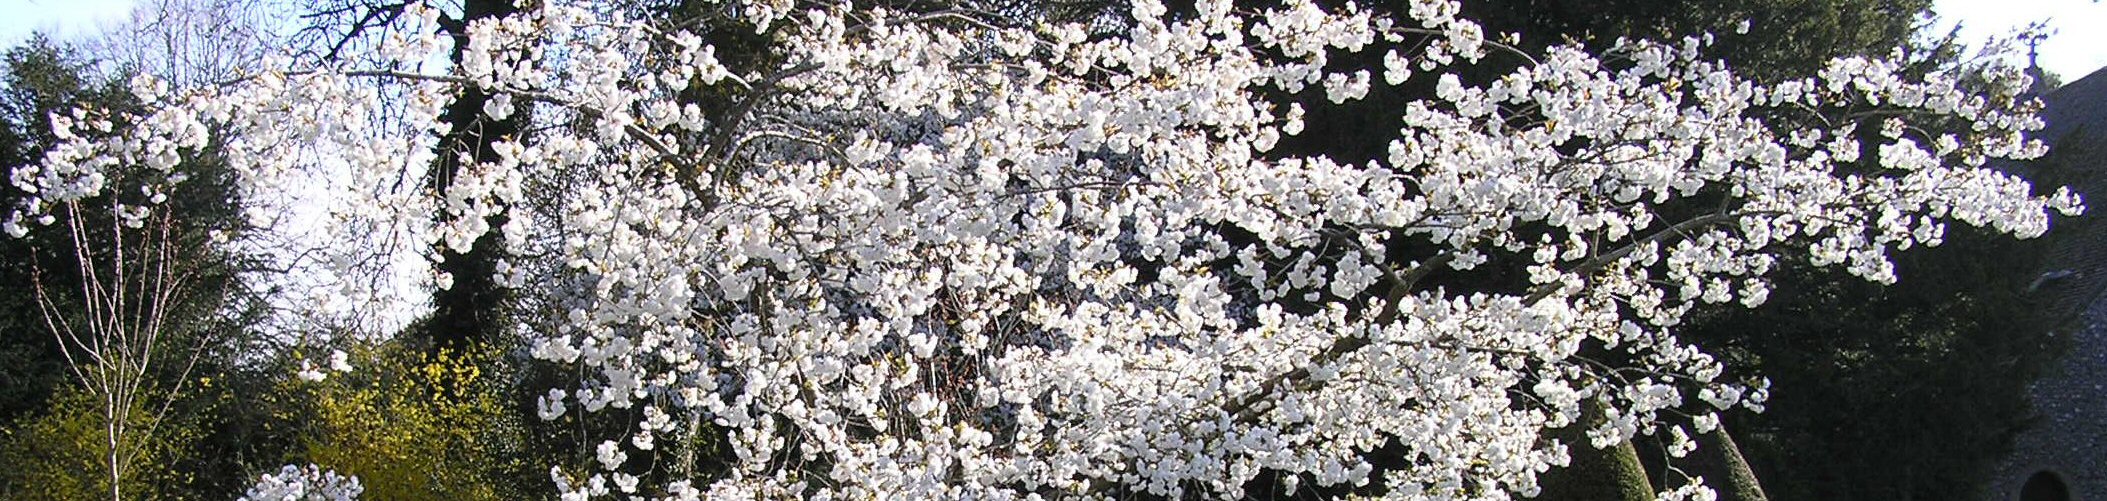 Prunus shirotea